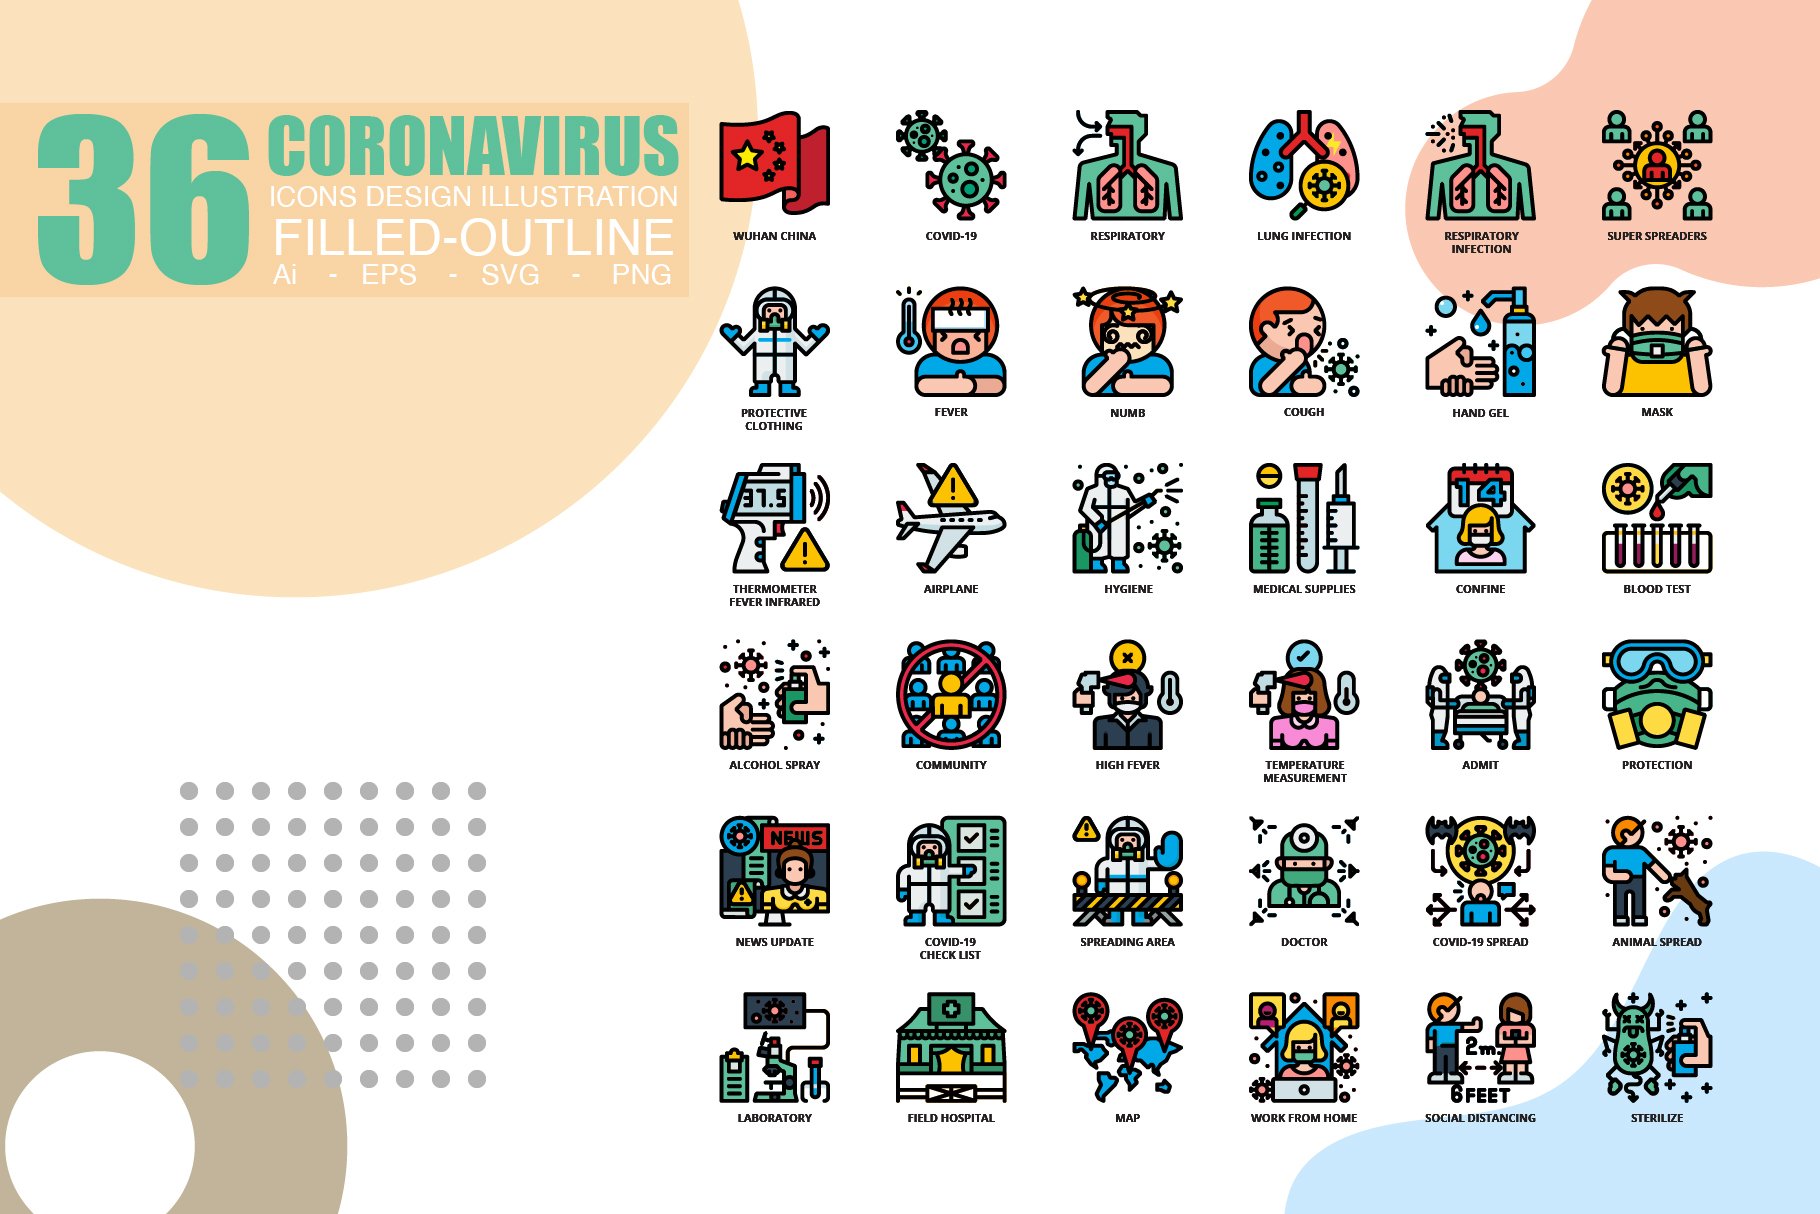 36 Coronavirus icons set x 3 Style cover image.